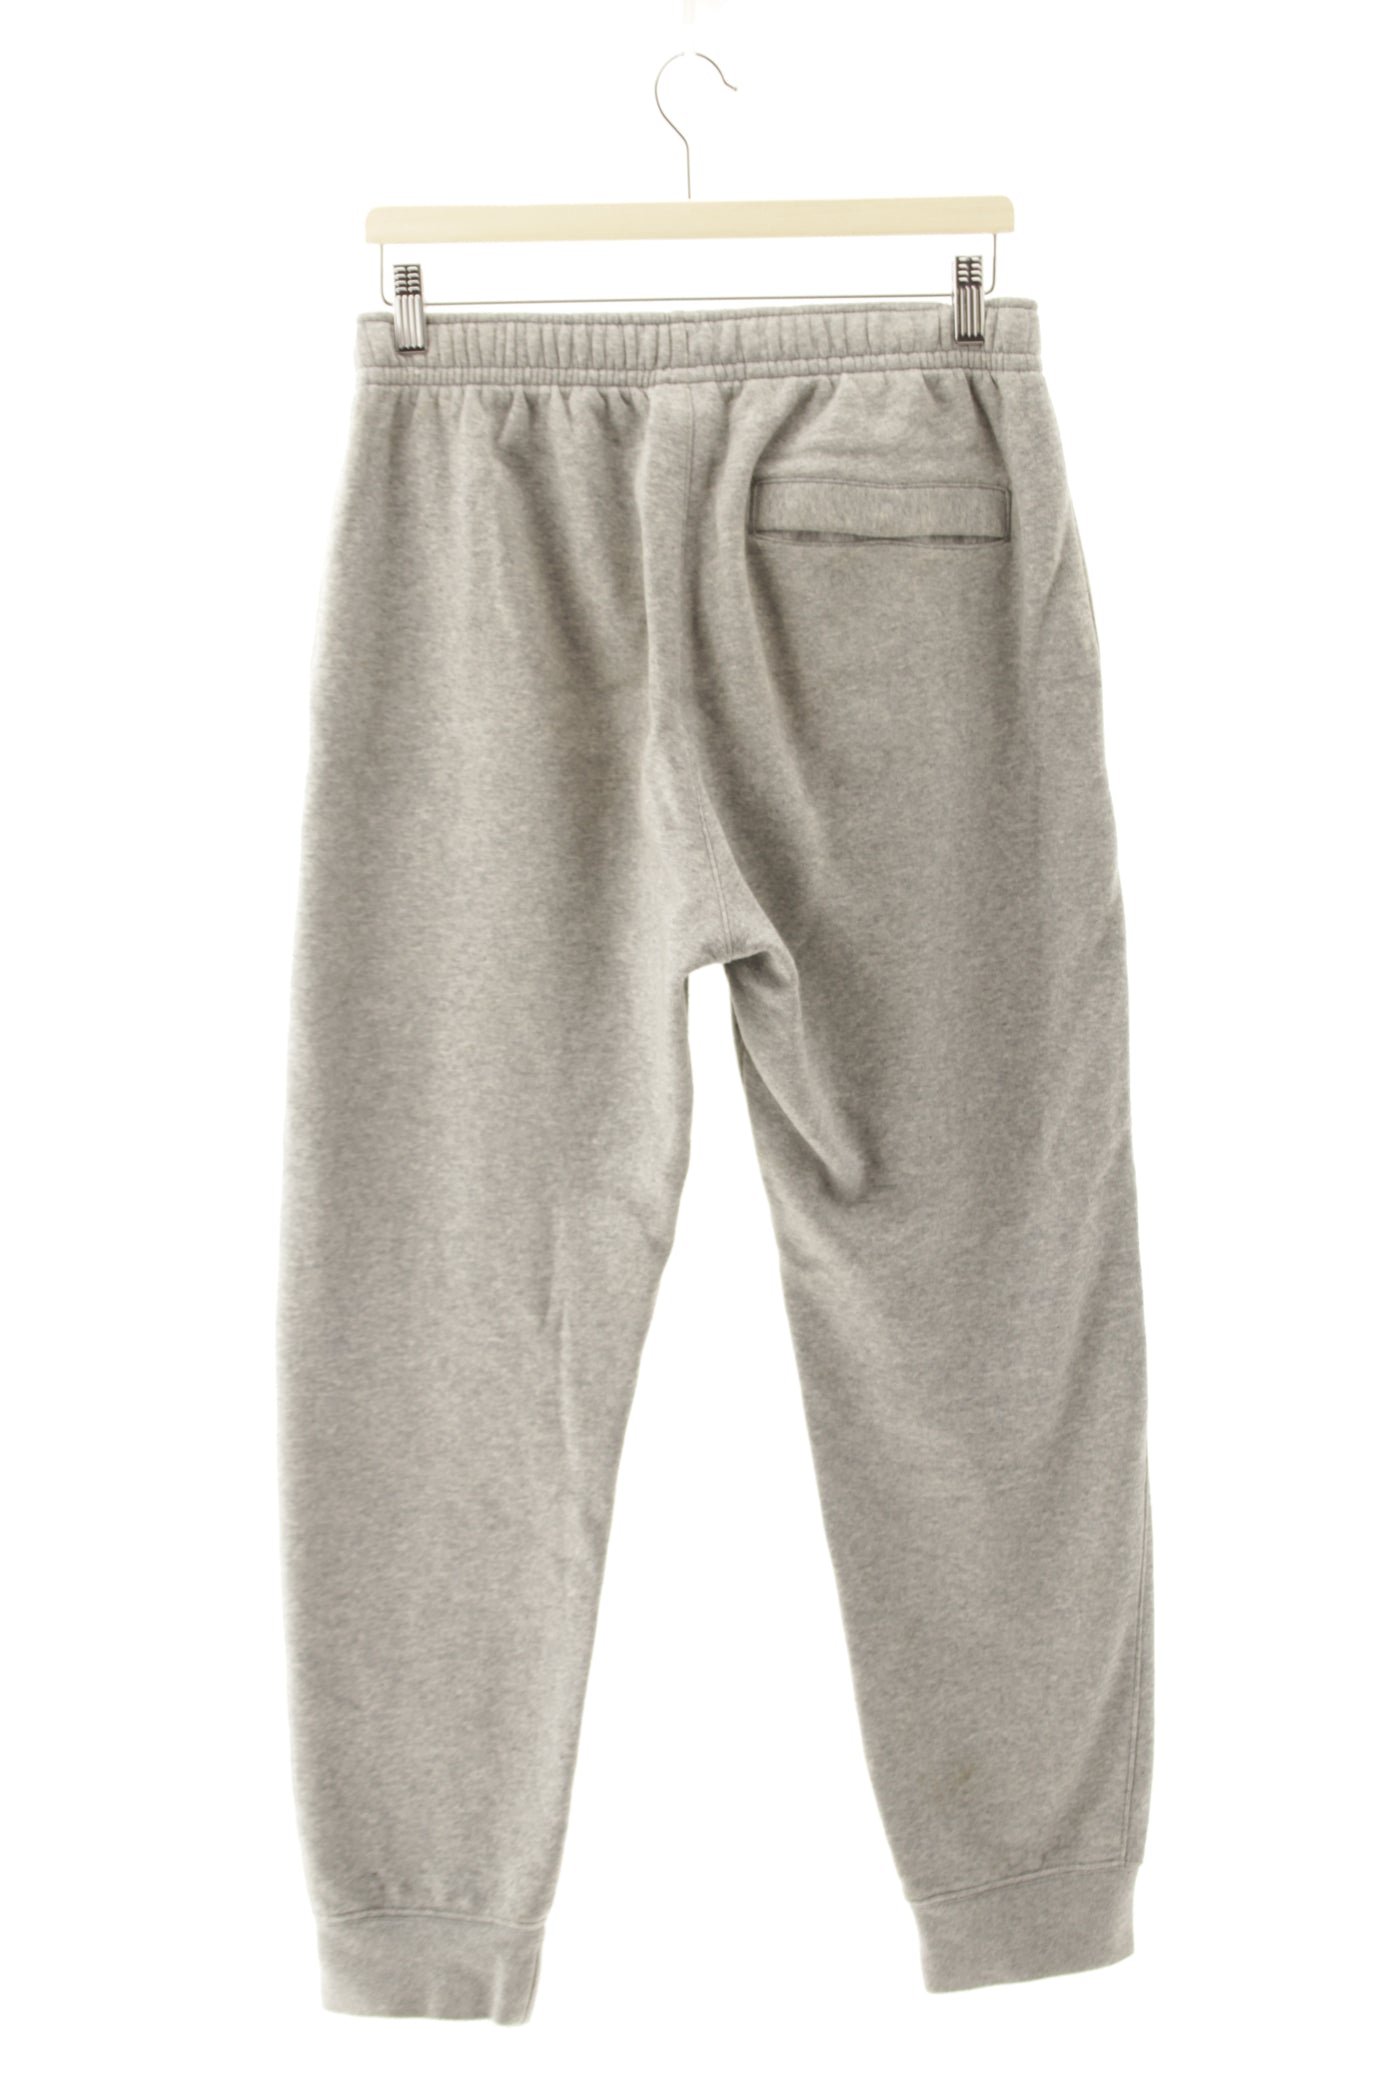 Pantalón jogger gris Nike